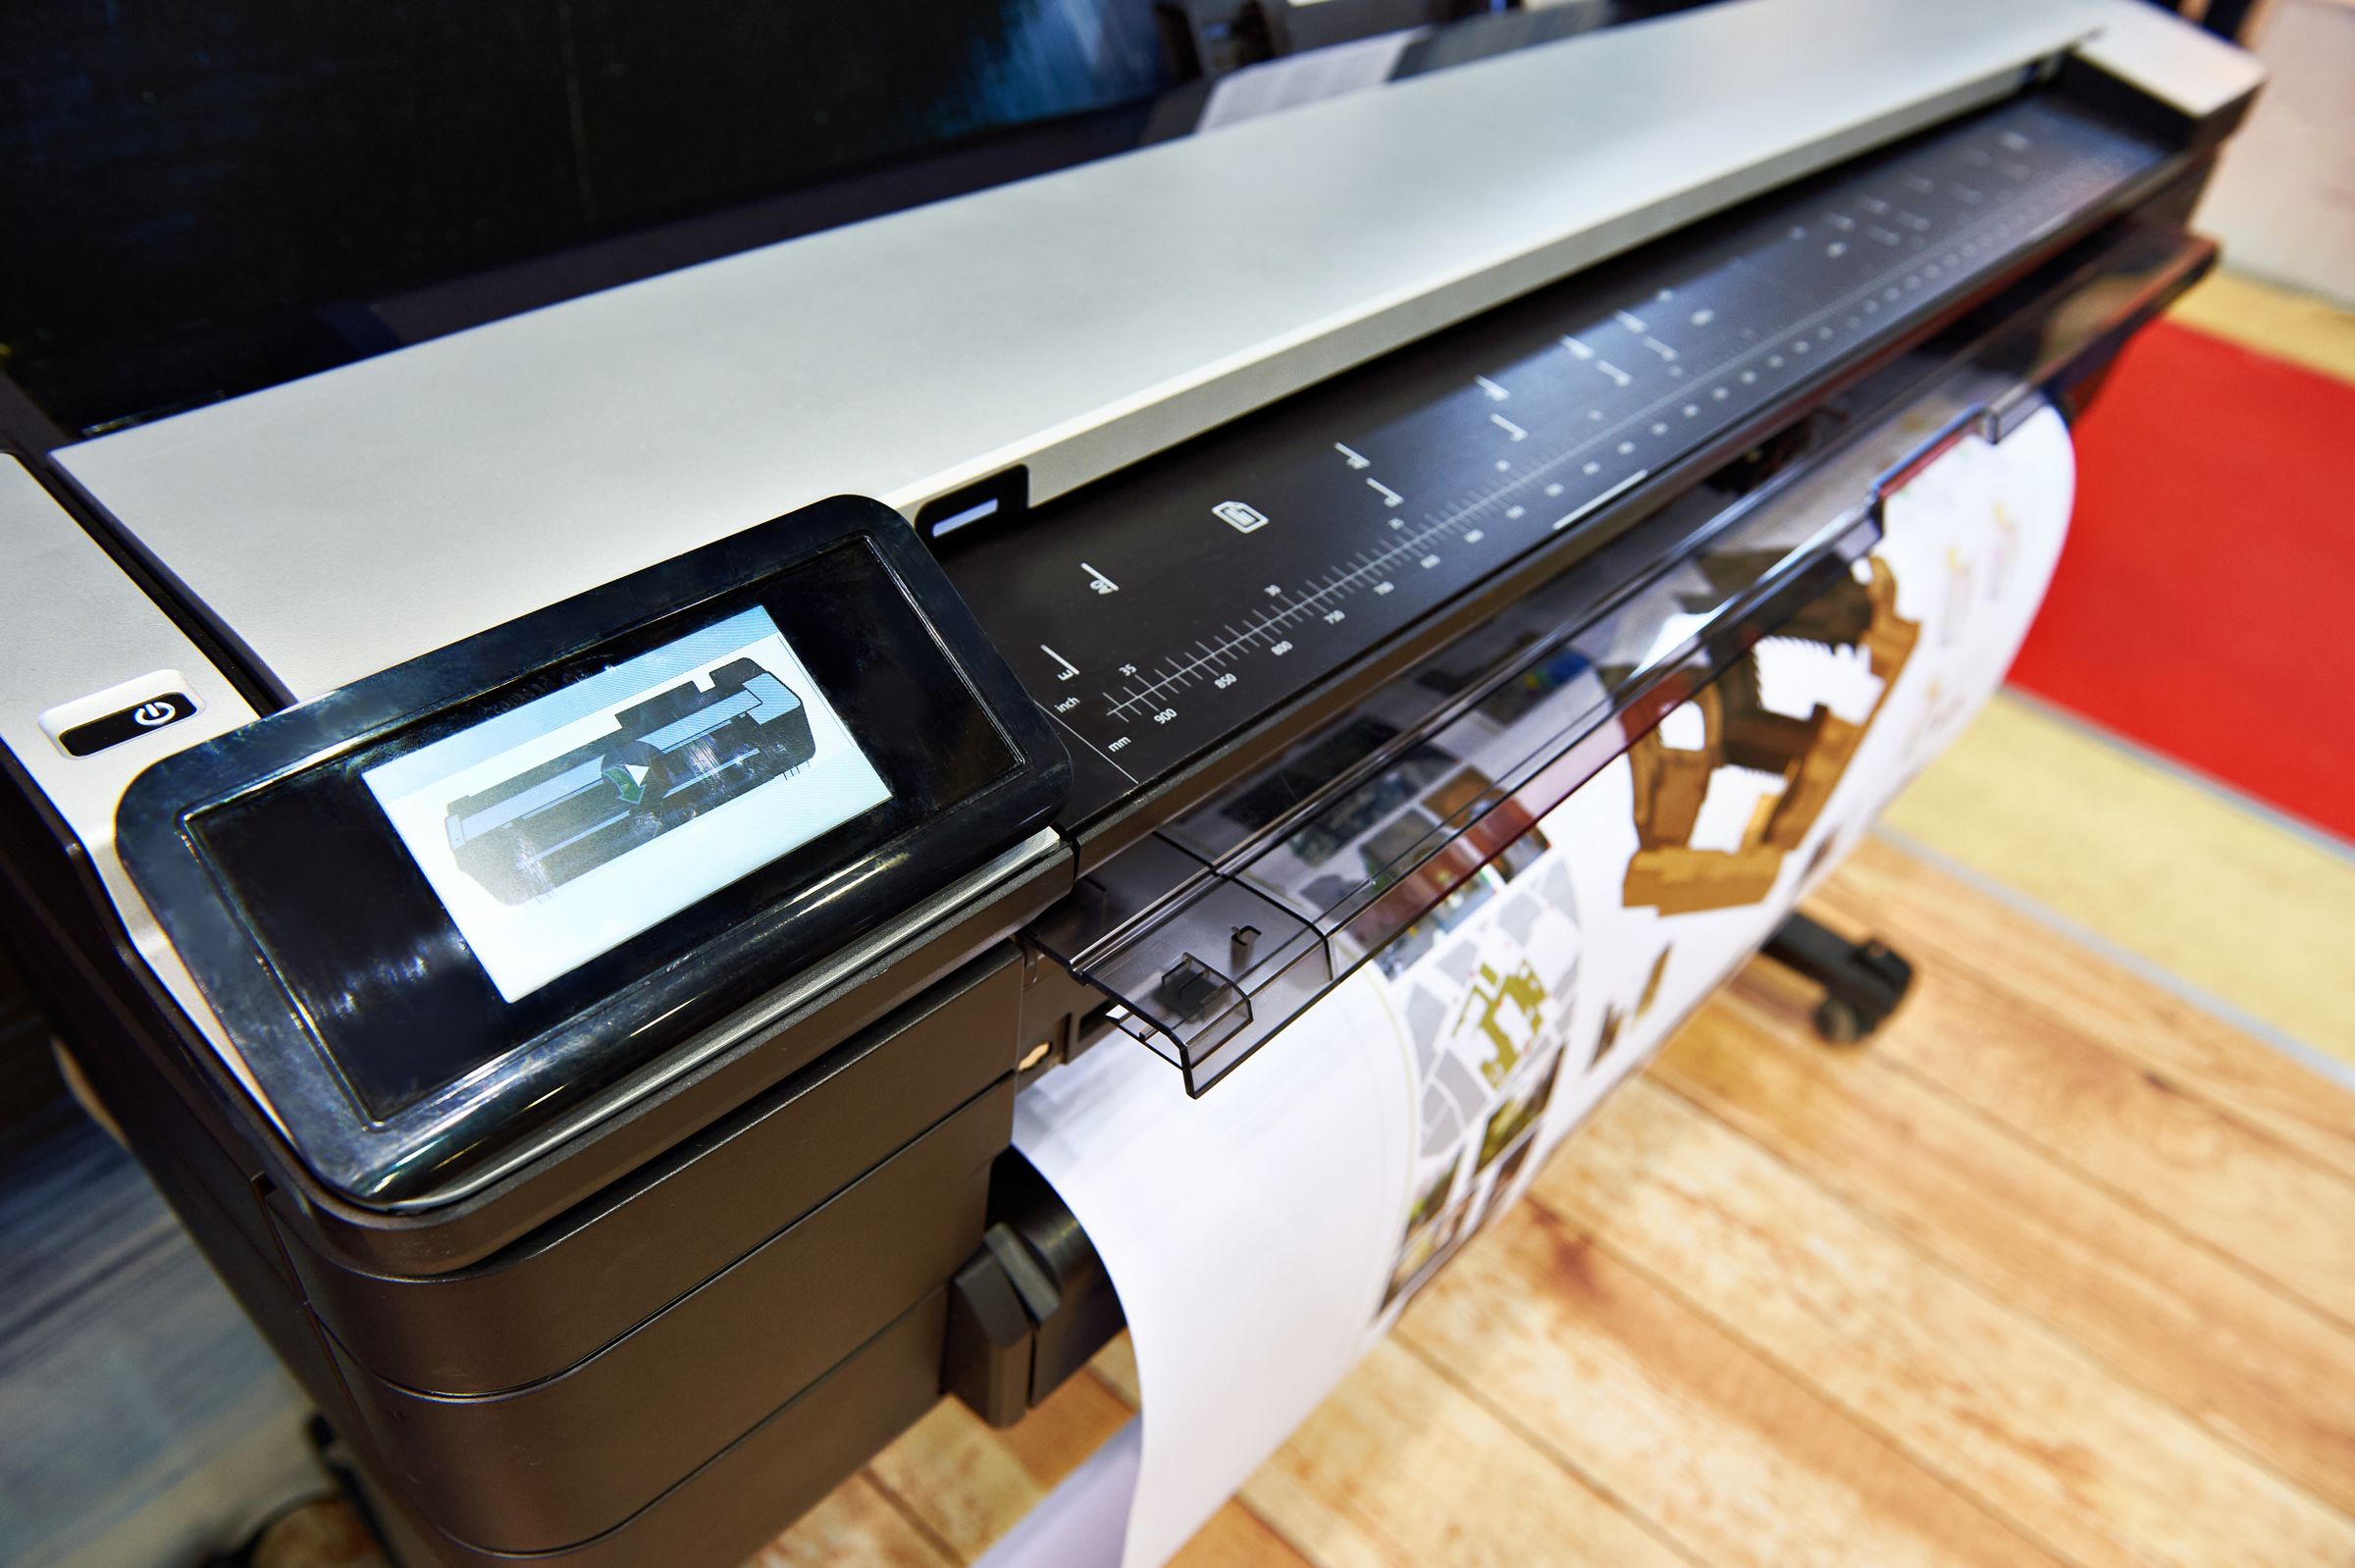 Medios de inyección de tinta, material de impresión